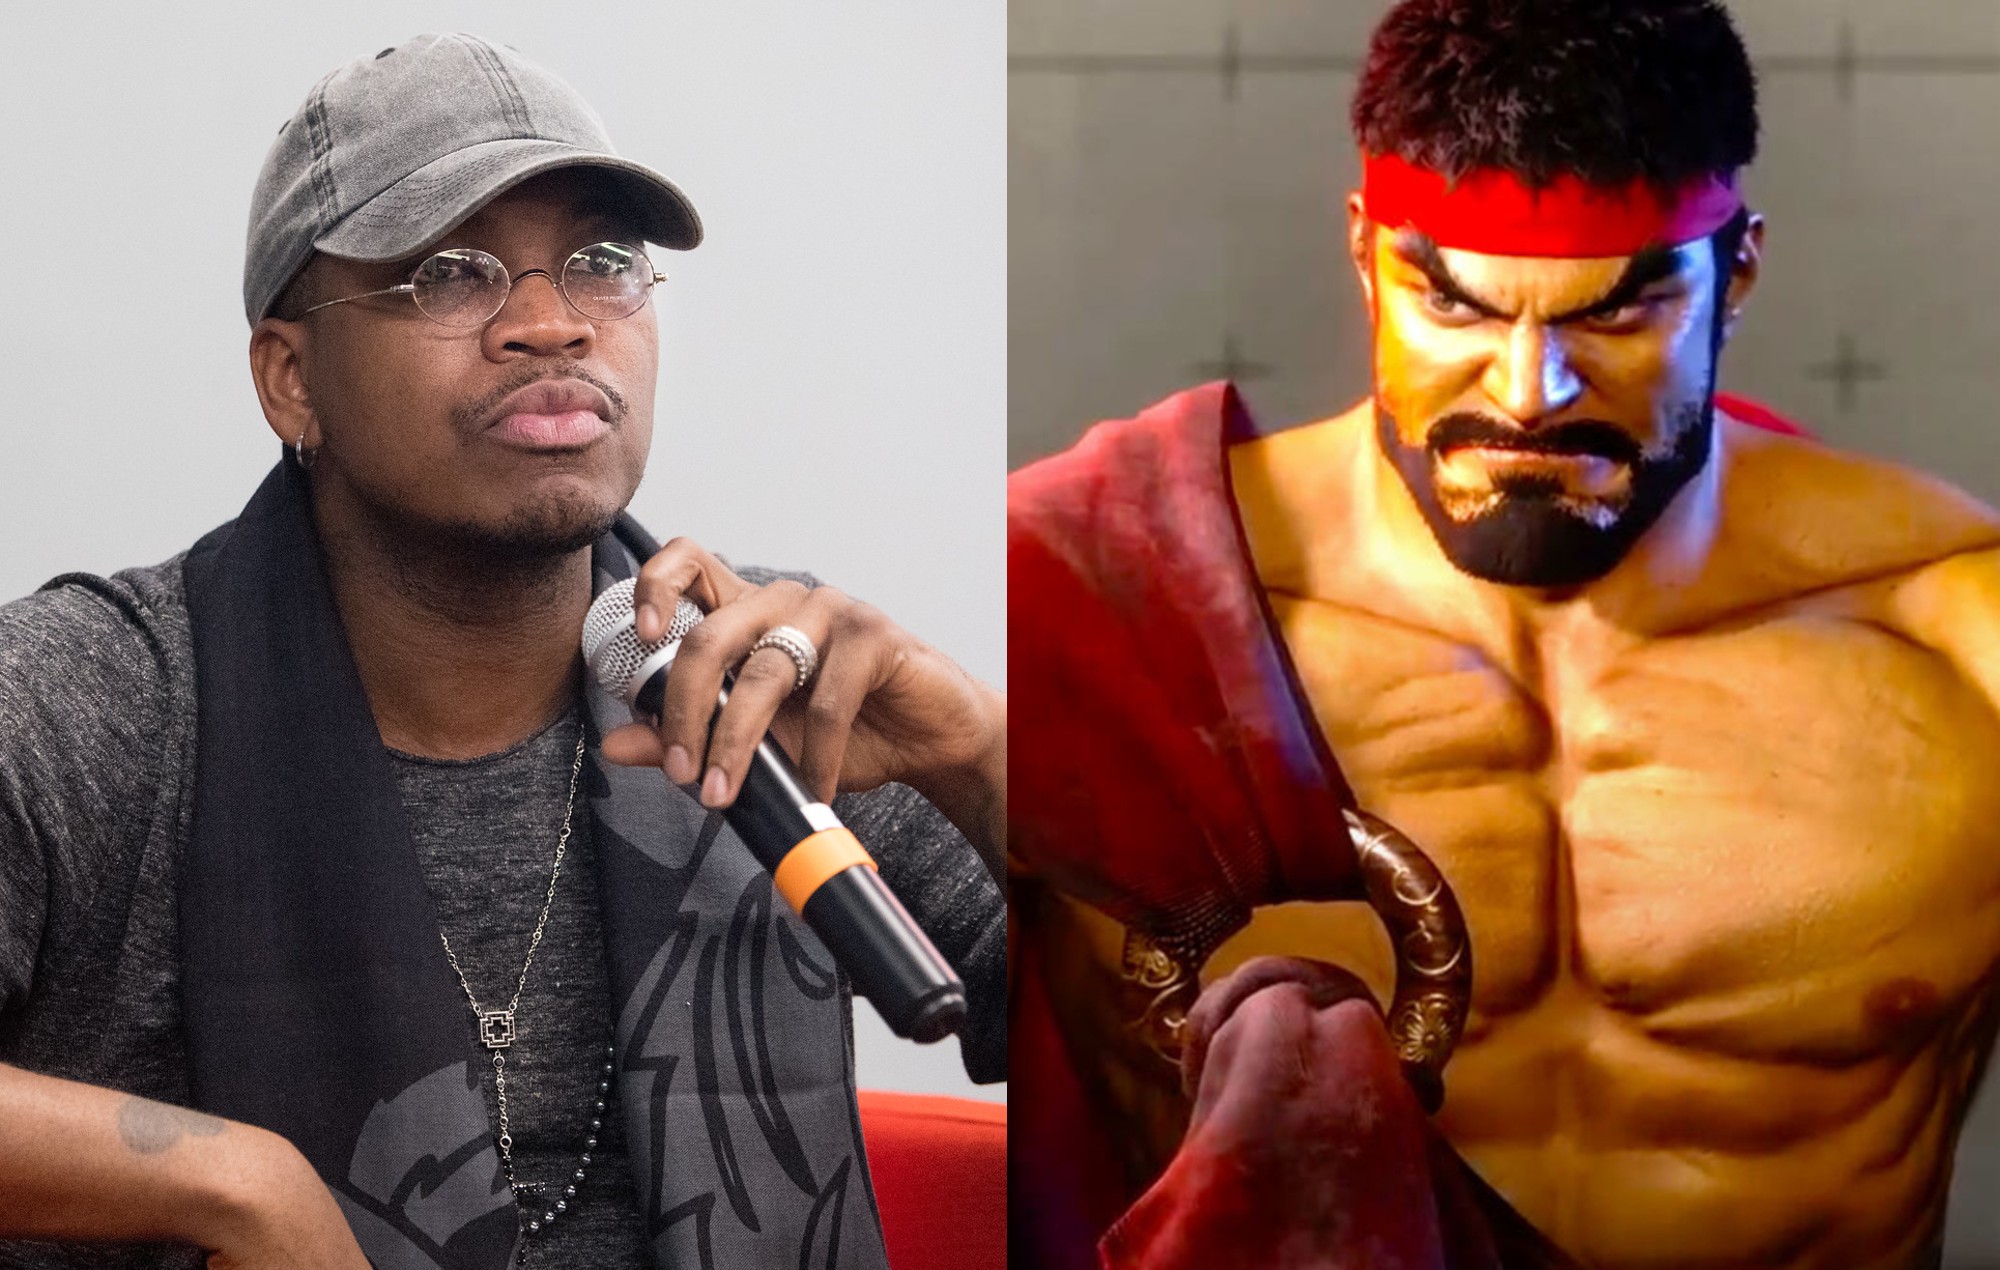 Ne-Yo has beaten Wale and Lupe Fiasco in ‘Street Fighter’